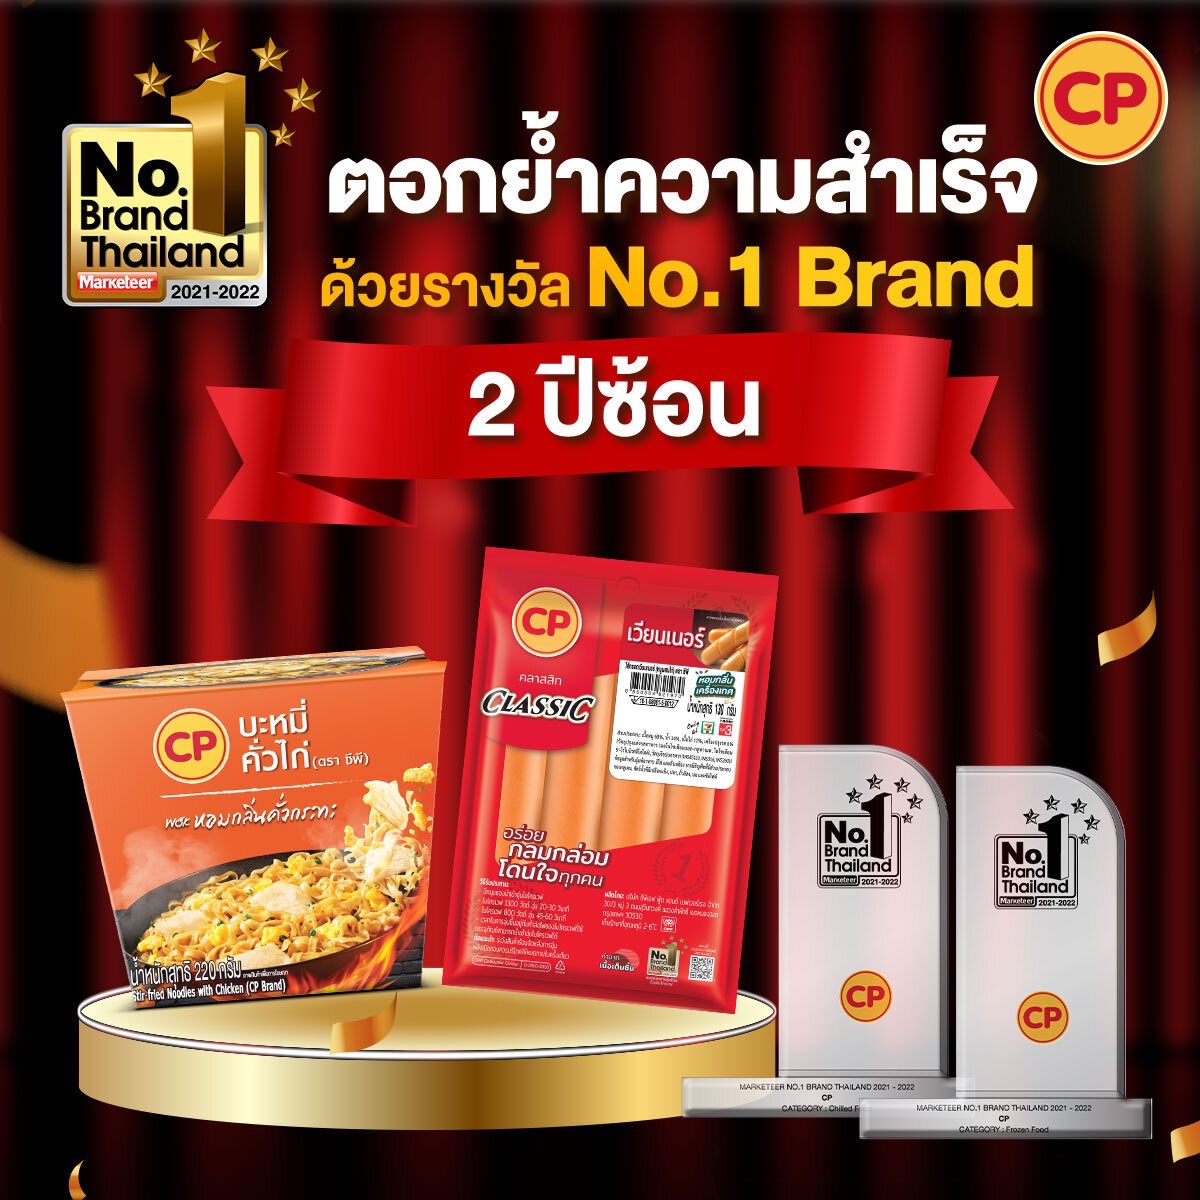 CPF ตอกย้ำ‼ ความสำเร็จ คว้า 2 รางวัล No.1 Brand Thailand ที่ครองใจผู้บริโภคคนไทยทั้งประเทศ 2 ปีซ้อน